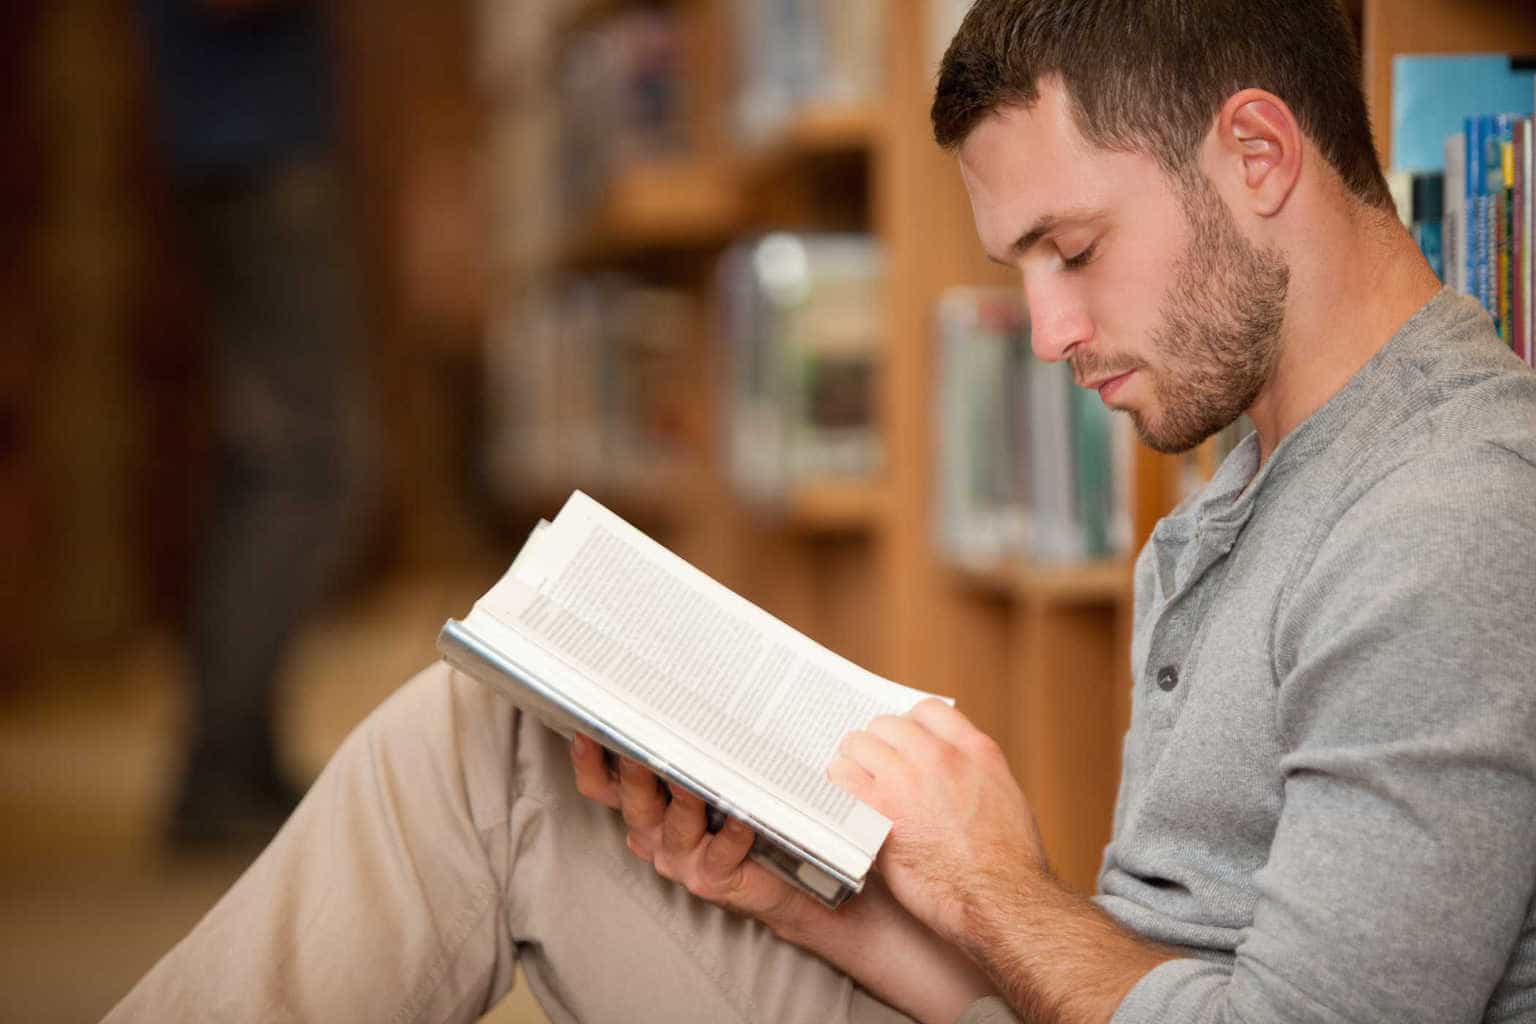 Les gens qui aiment lire des livres vivent une vie plus heureuse